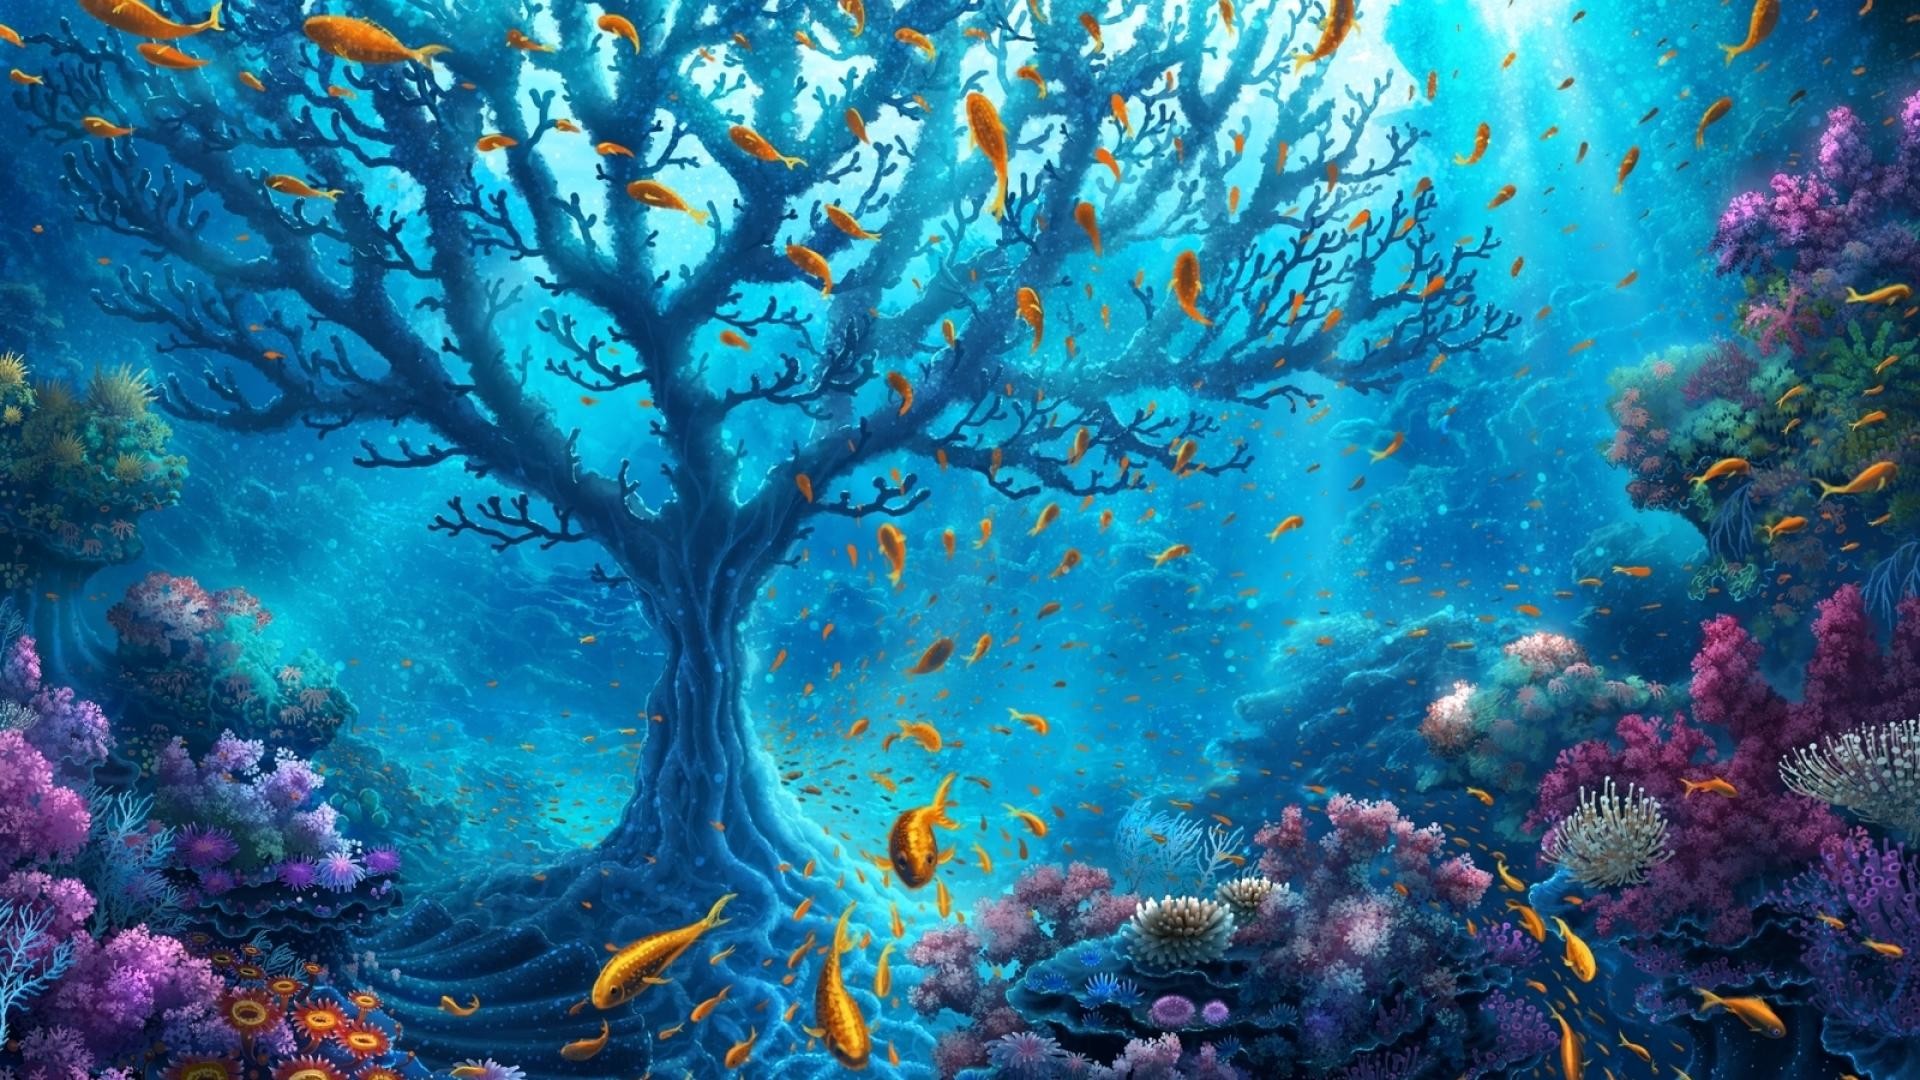 1920x1080 Underwater World Fantasy Wallpapers | Underwater World Fantasy .